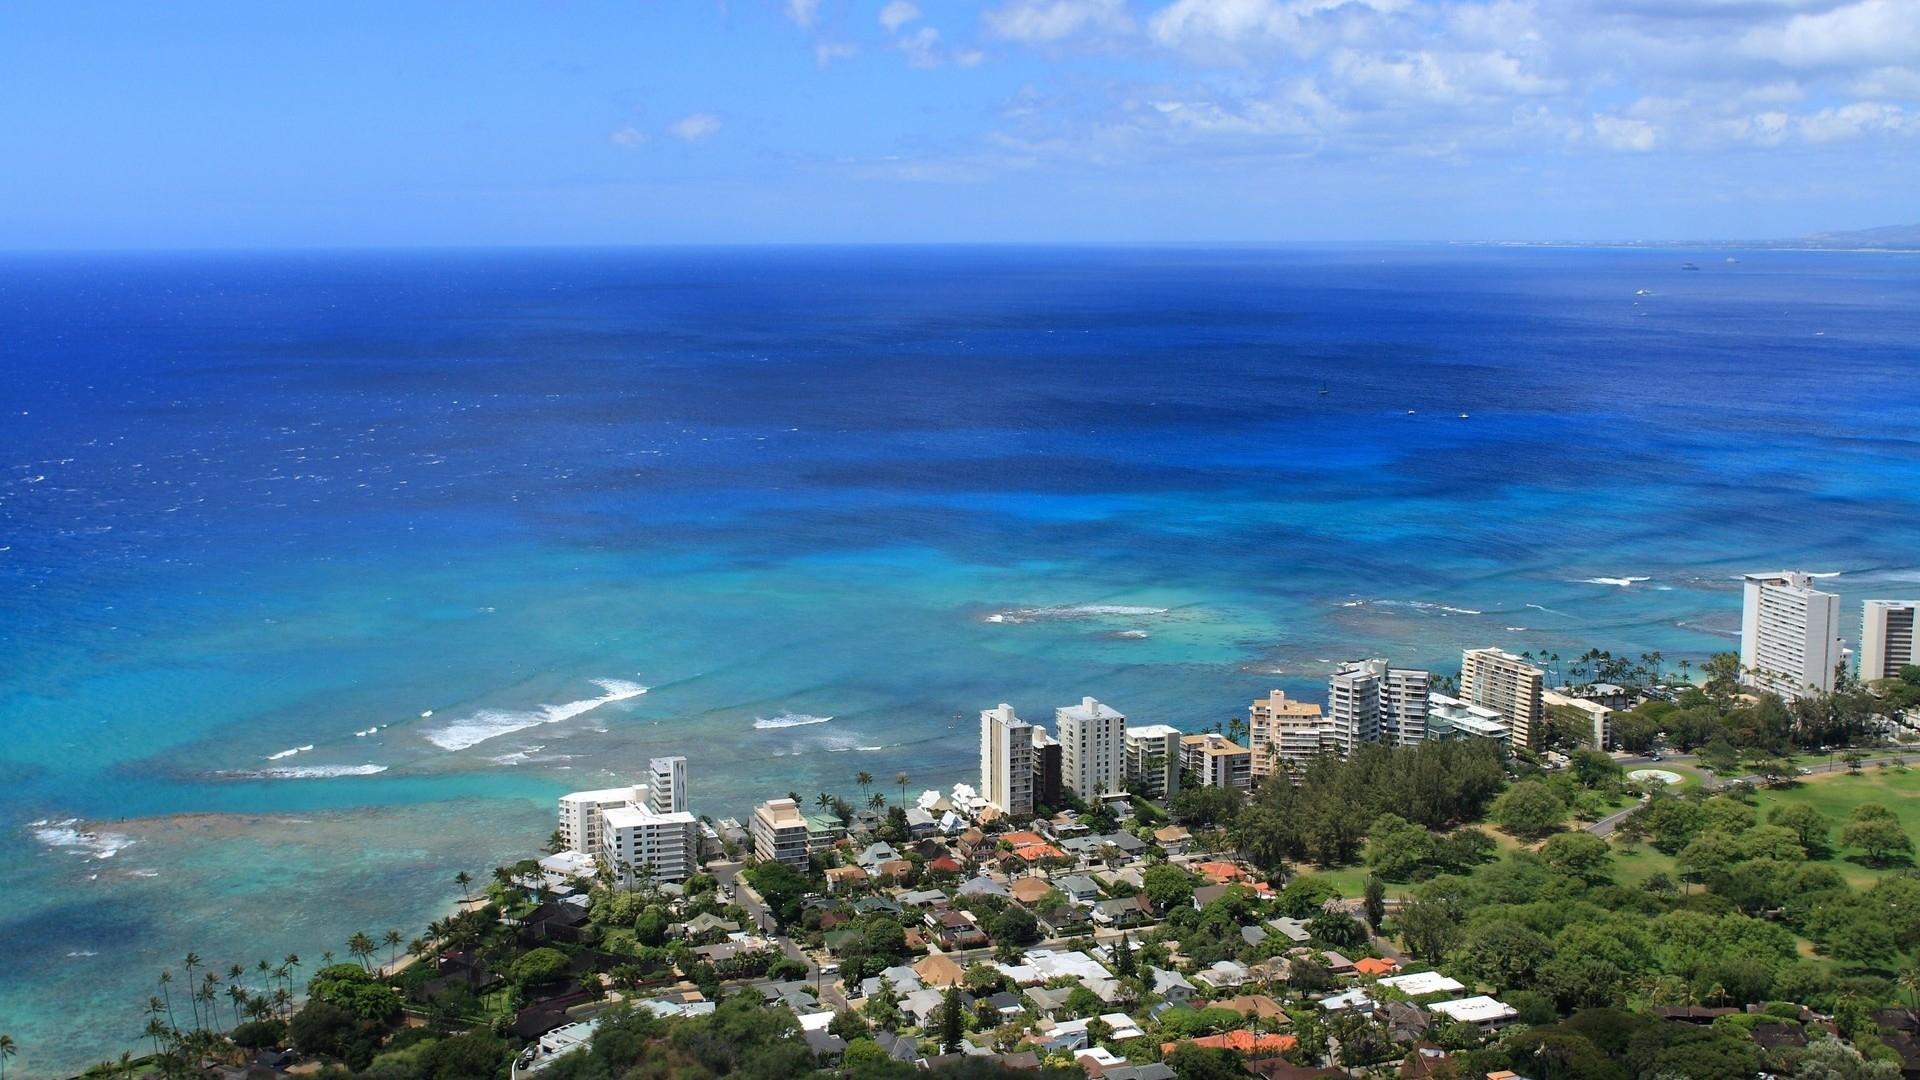 壁纸1280×1024夏威夷的碧海蓝天 夏威夷海岛图片 水底的鱼群壁纸,夏威夷浪漫海滩壁纸图片-风景壁纸-风景图片素材-桌面壁纸